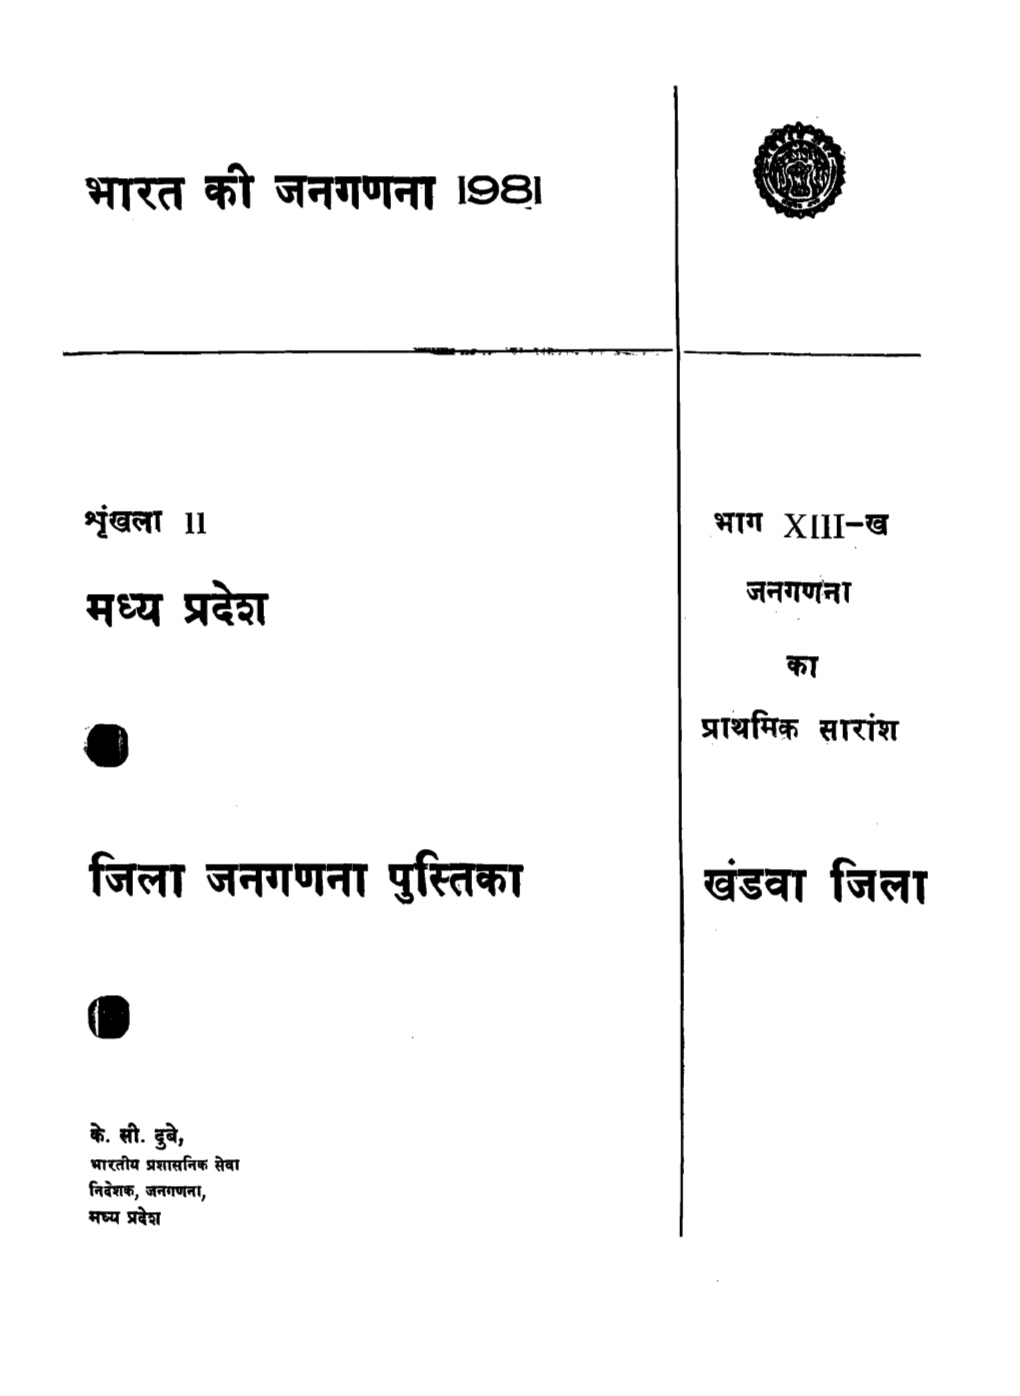 District Census Handbook, East-Nimar, Part XIII-B, Series-11